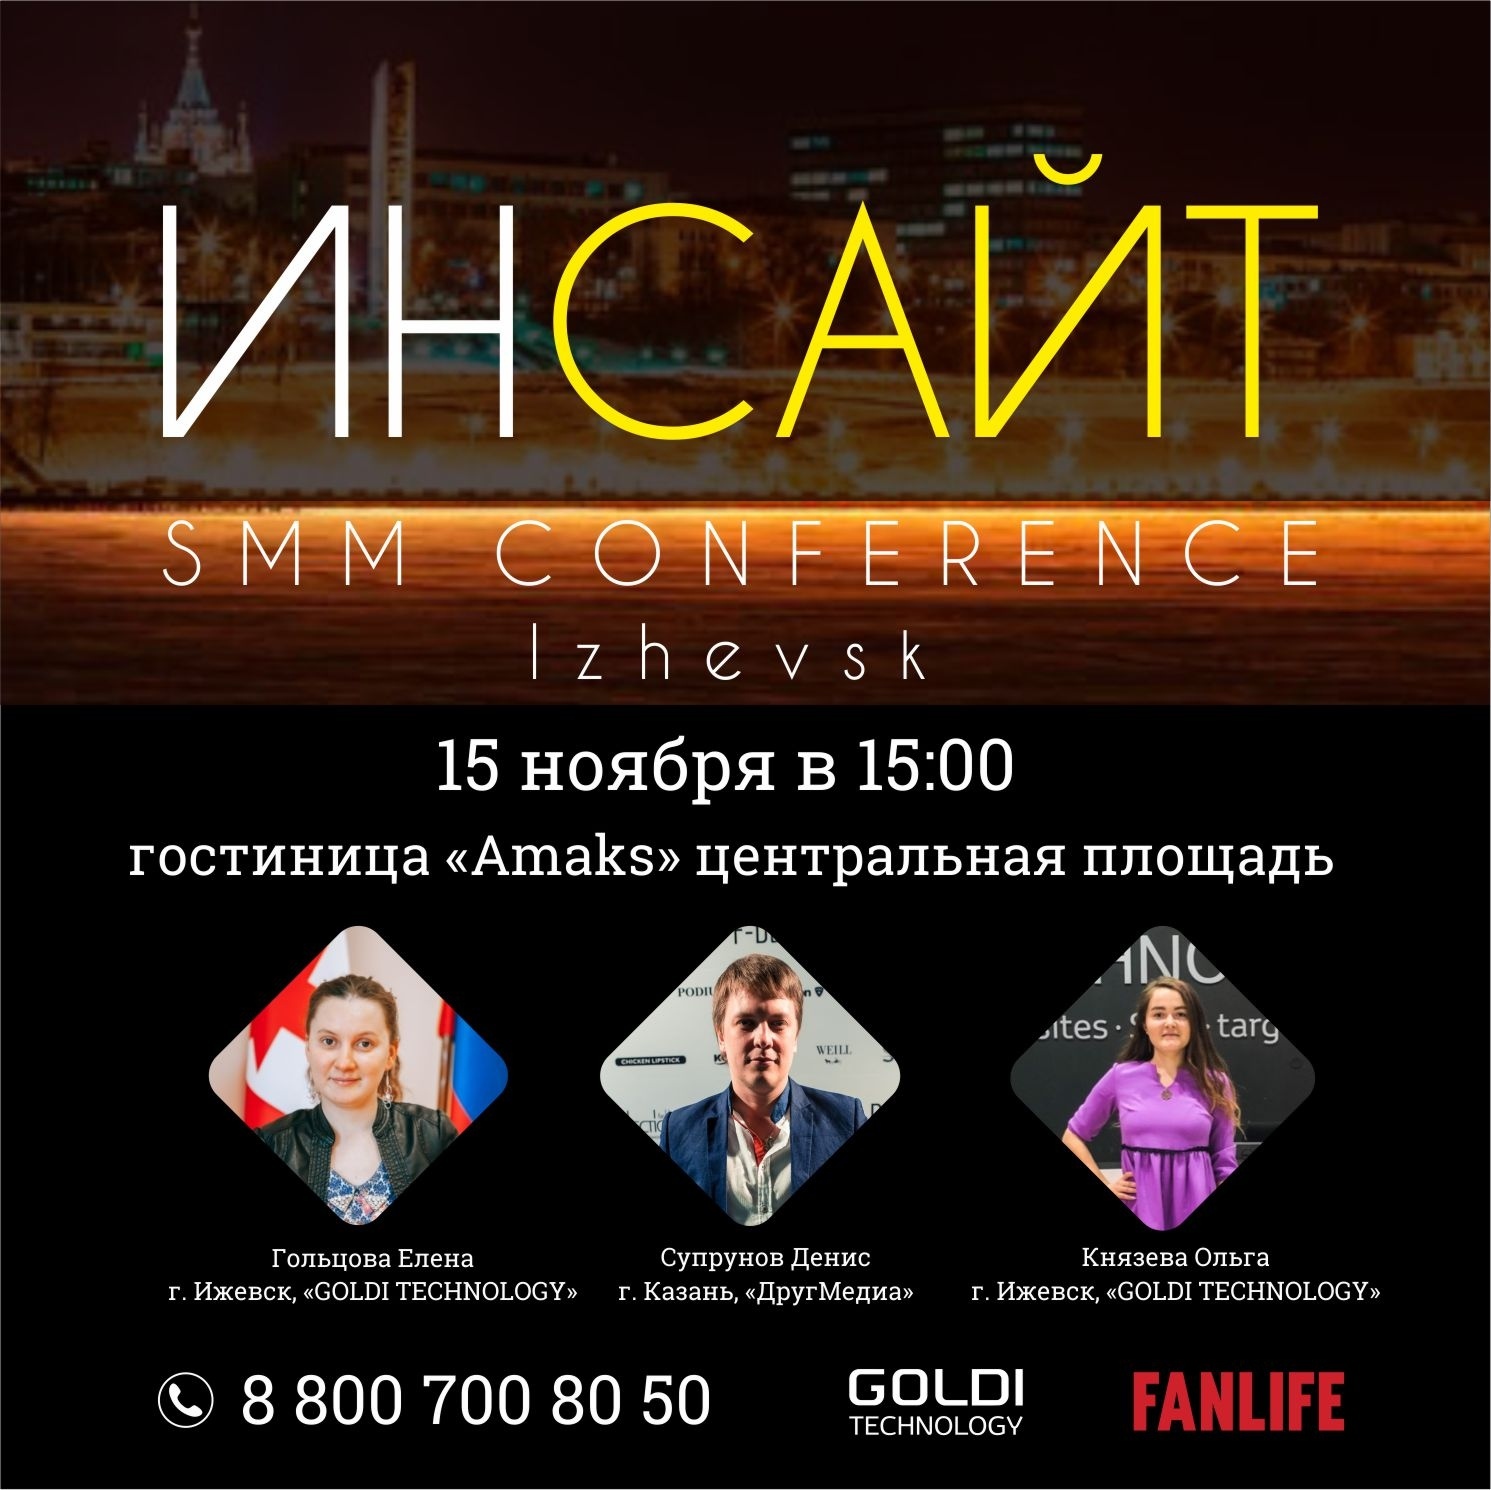 Афиша Ижевска — Бесплатная конференция по SMM